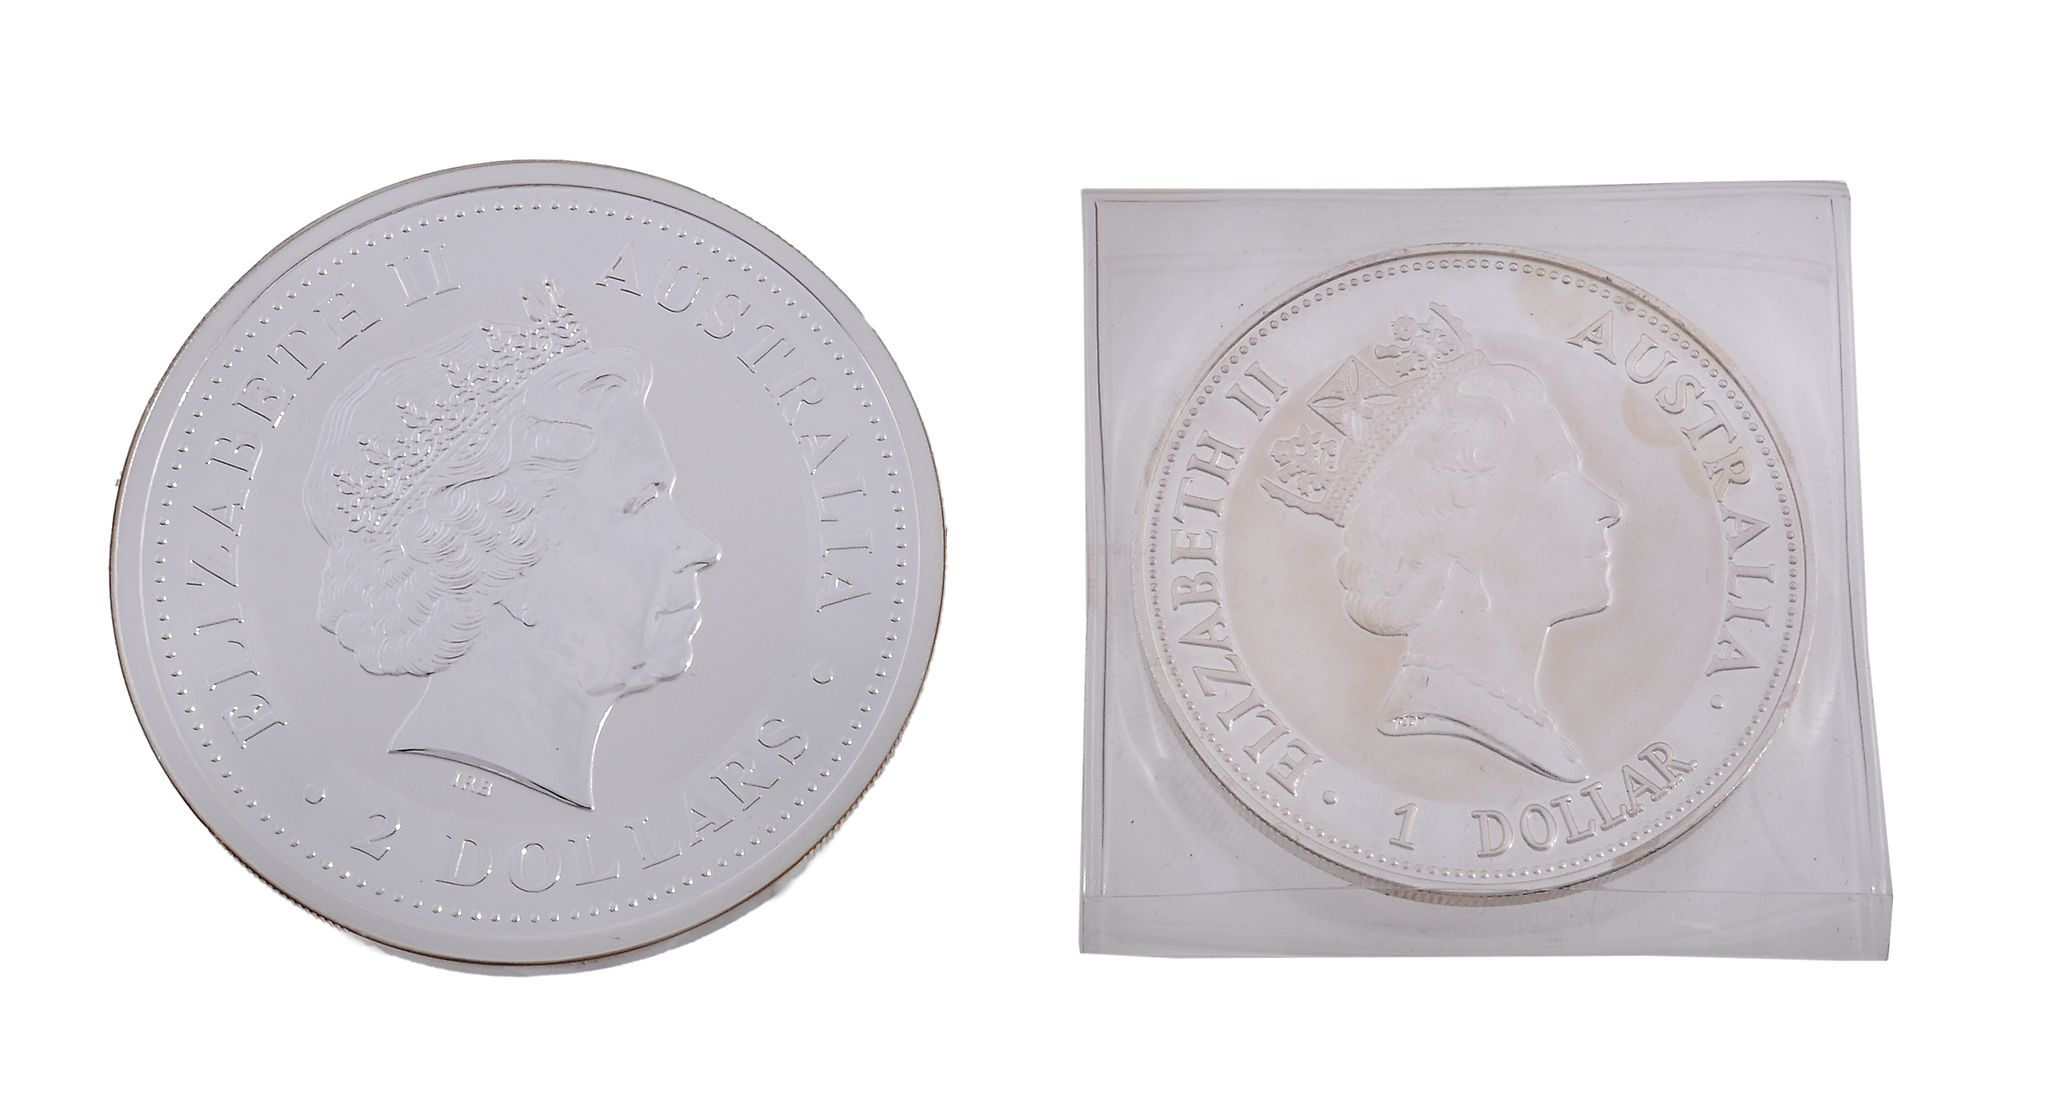 Australia, silver coins, Two-Dollars, 2000, obv. Elizabeth II, rev. Kookaburra, 2 oz, One-Dollar,